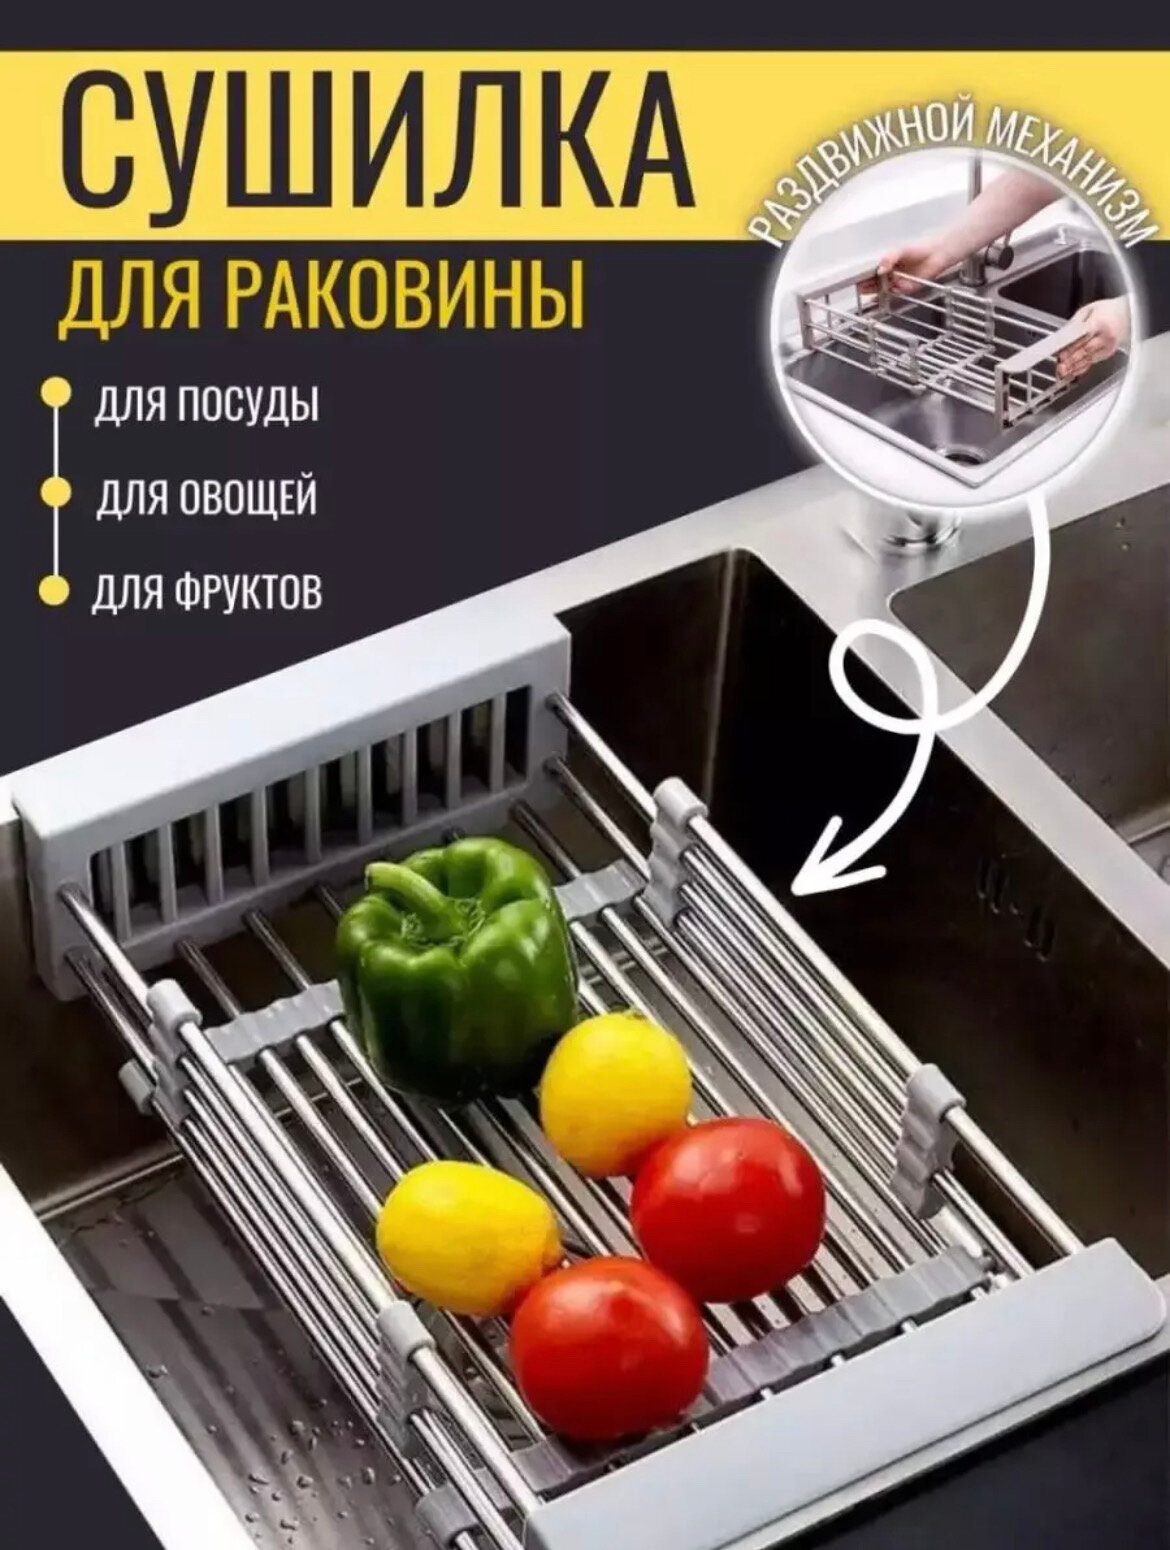 Сушилка-органайзер на раковину, для посуды, овощей и фруктов